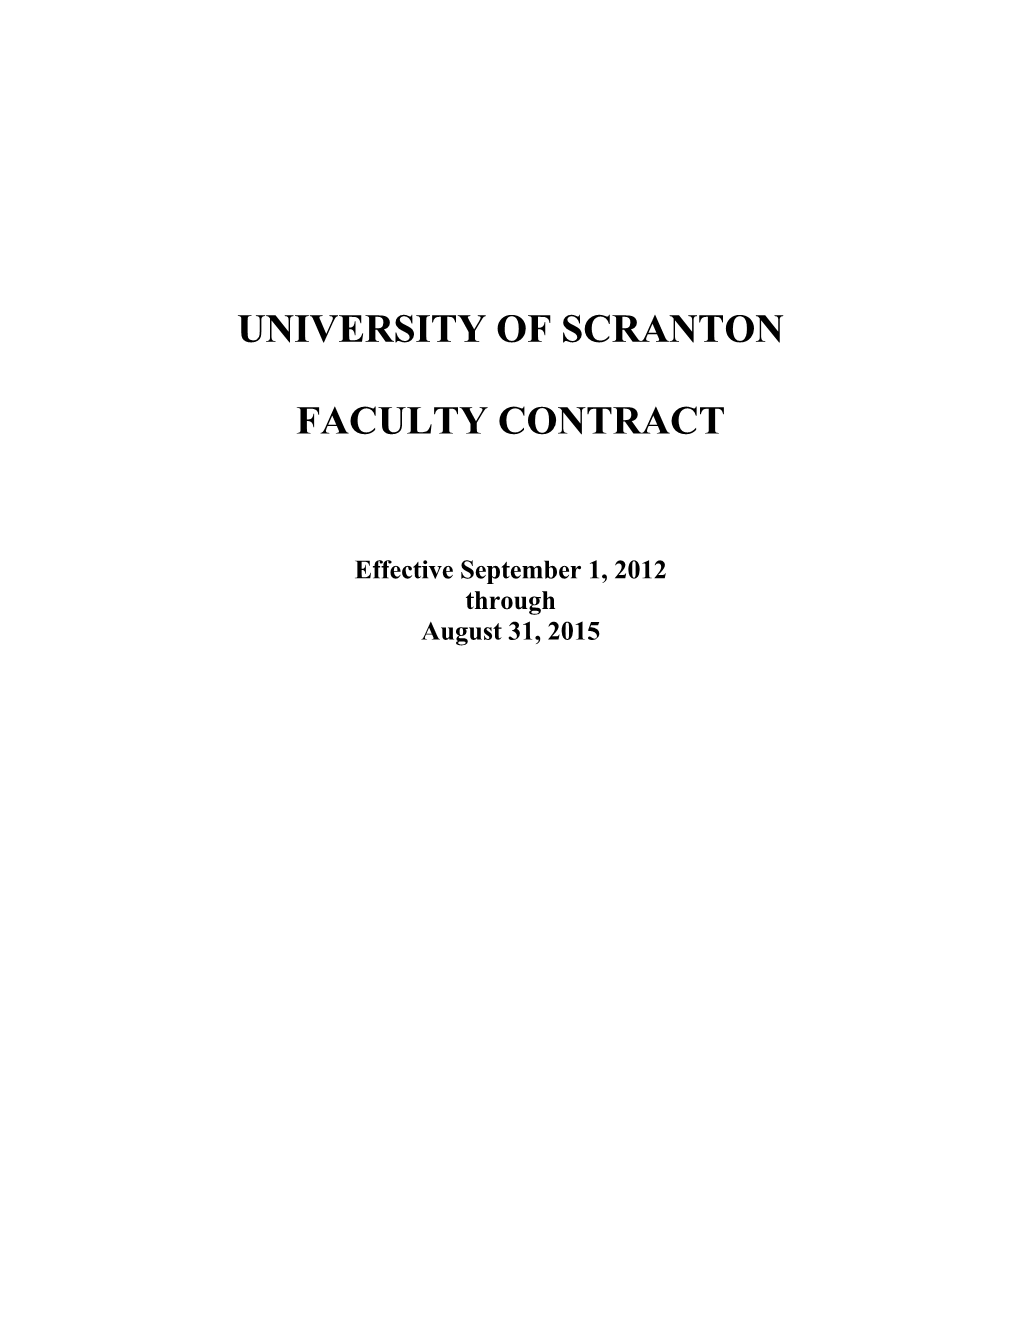 University of Scranton s1